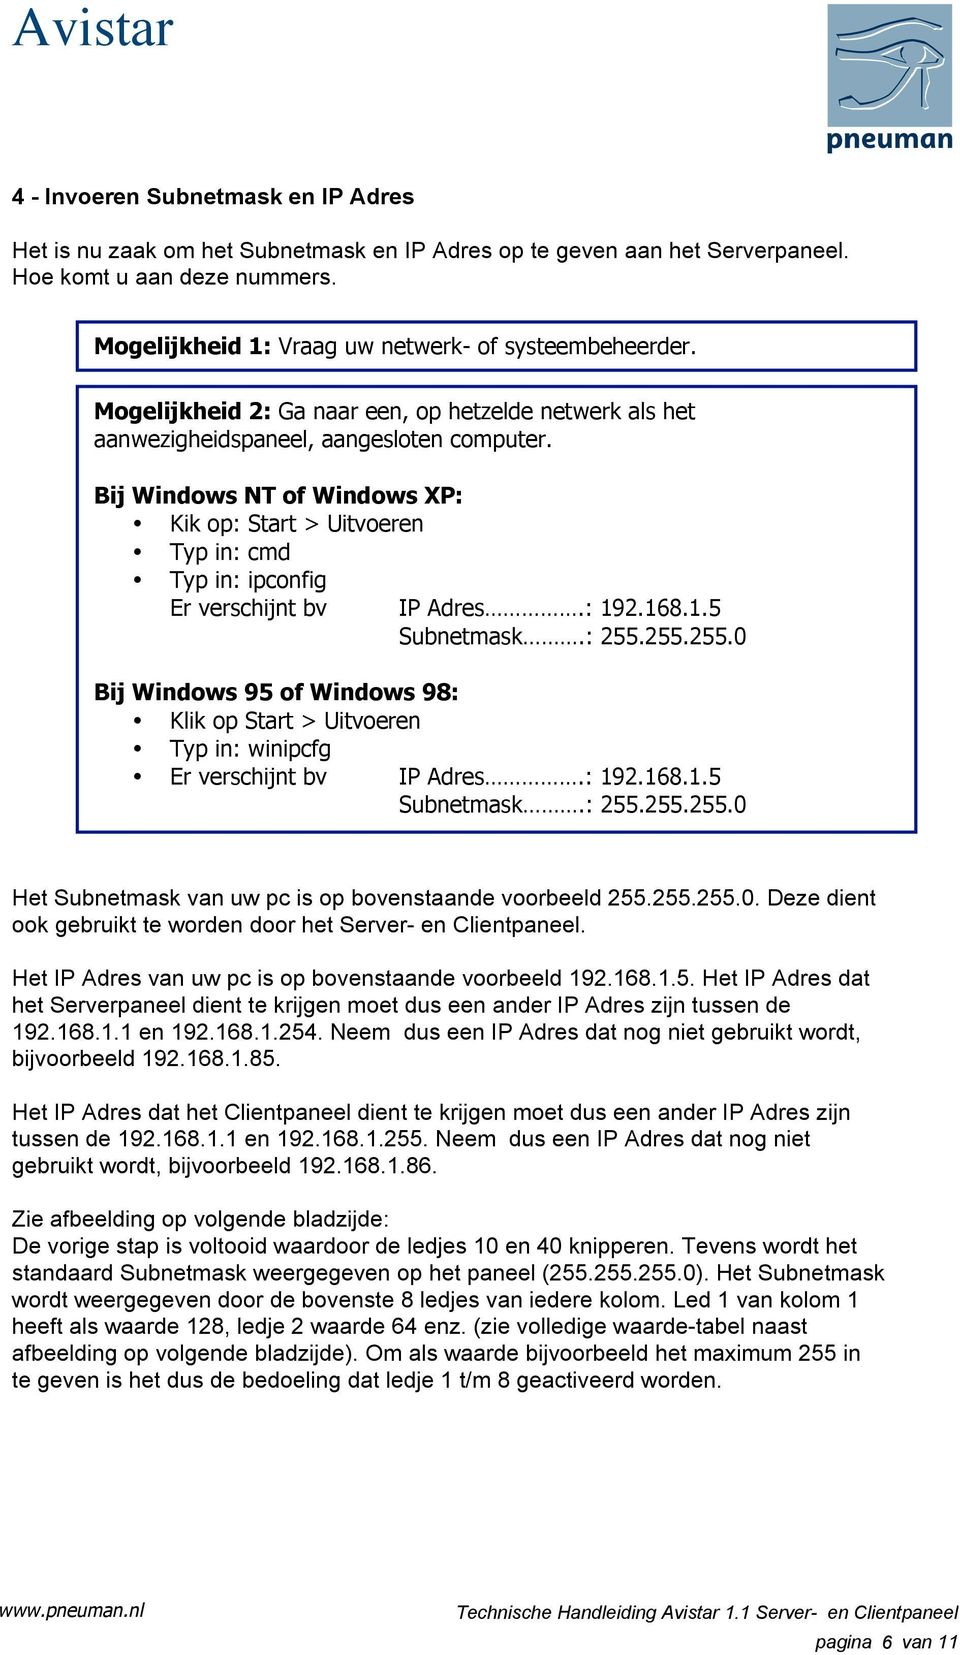 Bij Windows NT of Windows XP: Kik op: Start > Uitvoeren Typ in: cmd Typ in: ipconfig Er verschijnt bv IP Adres.: 192.168.1.5 Subnetmask.: 255.